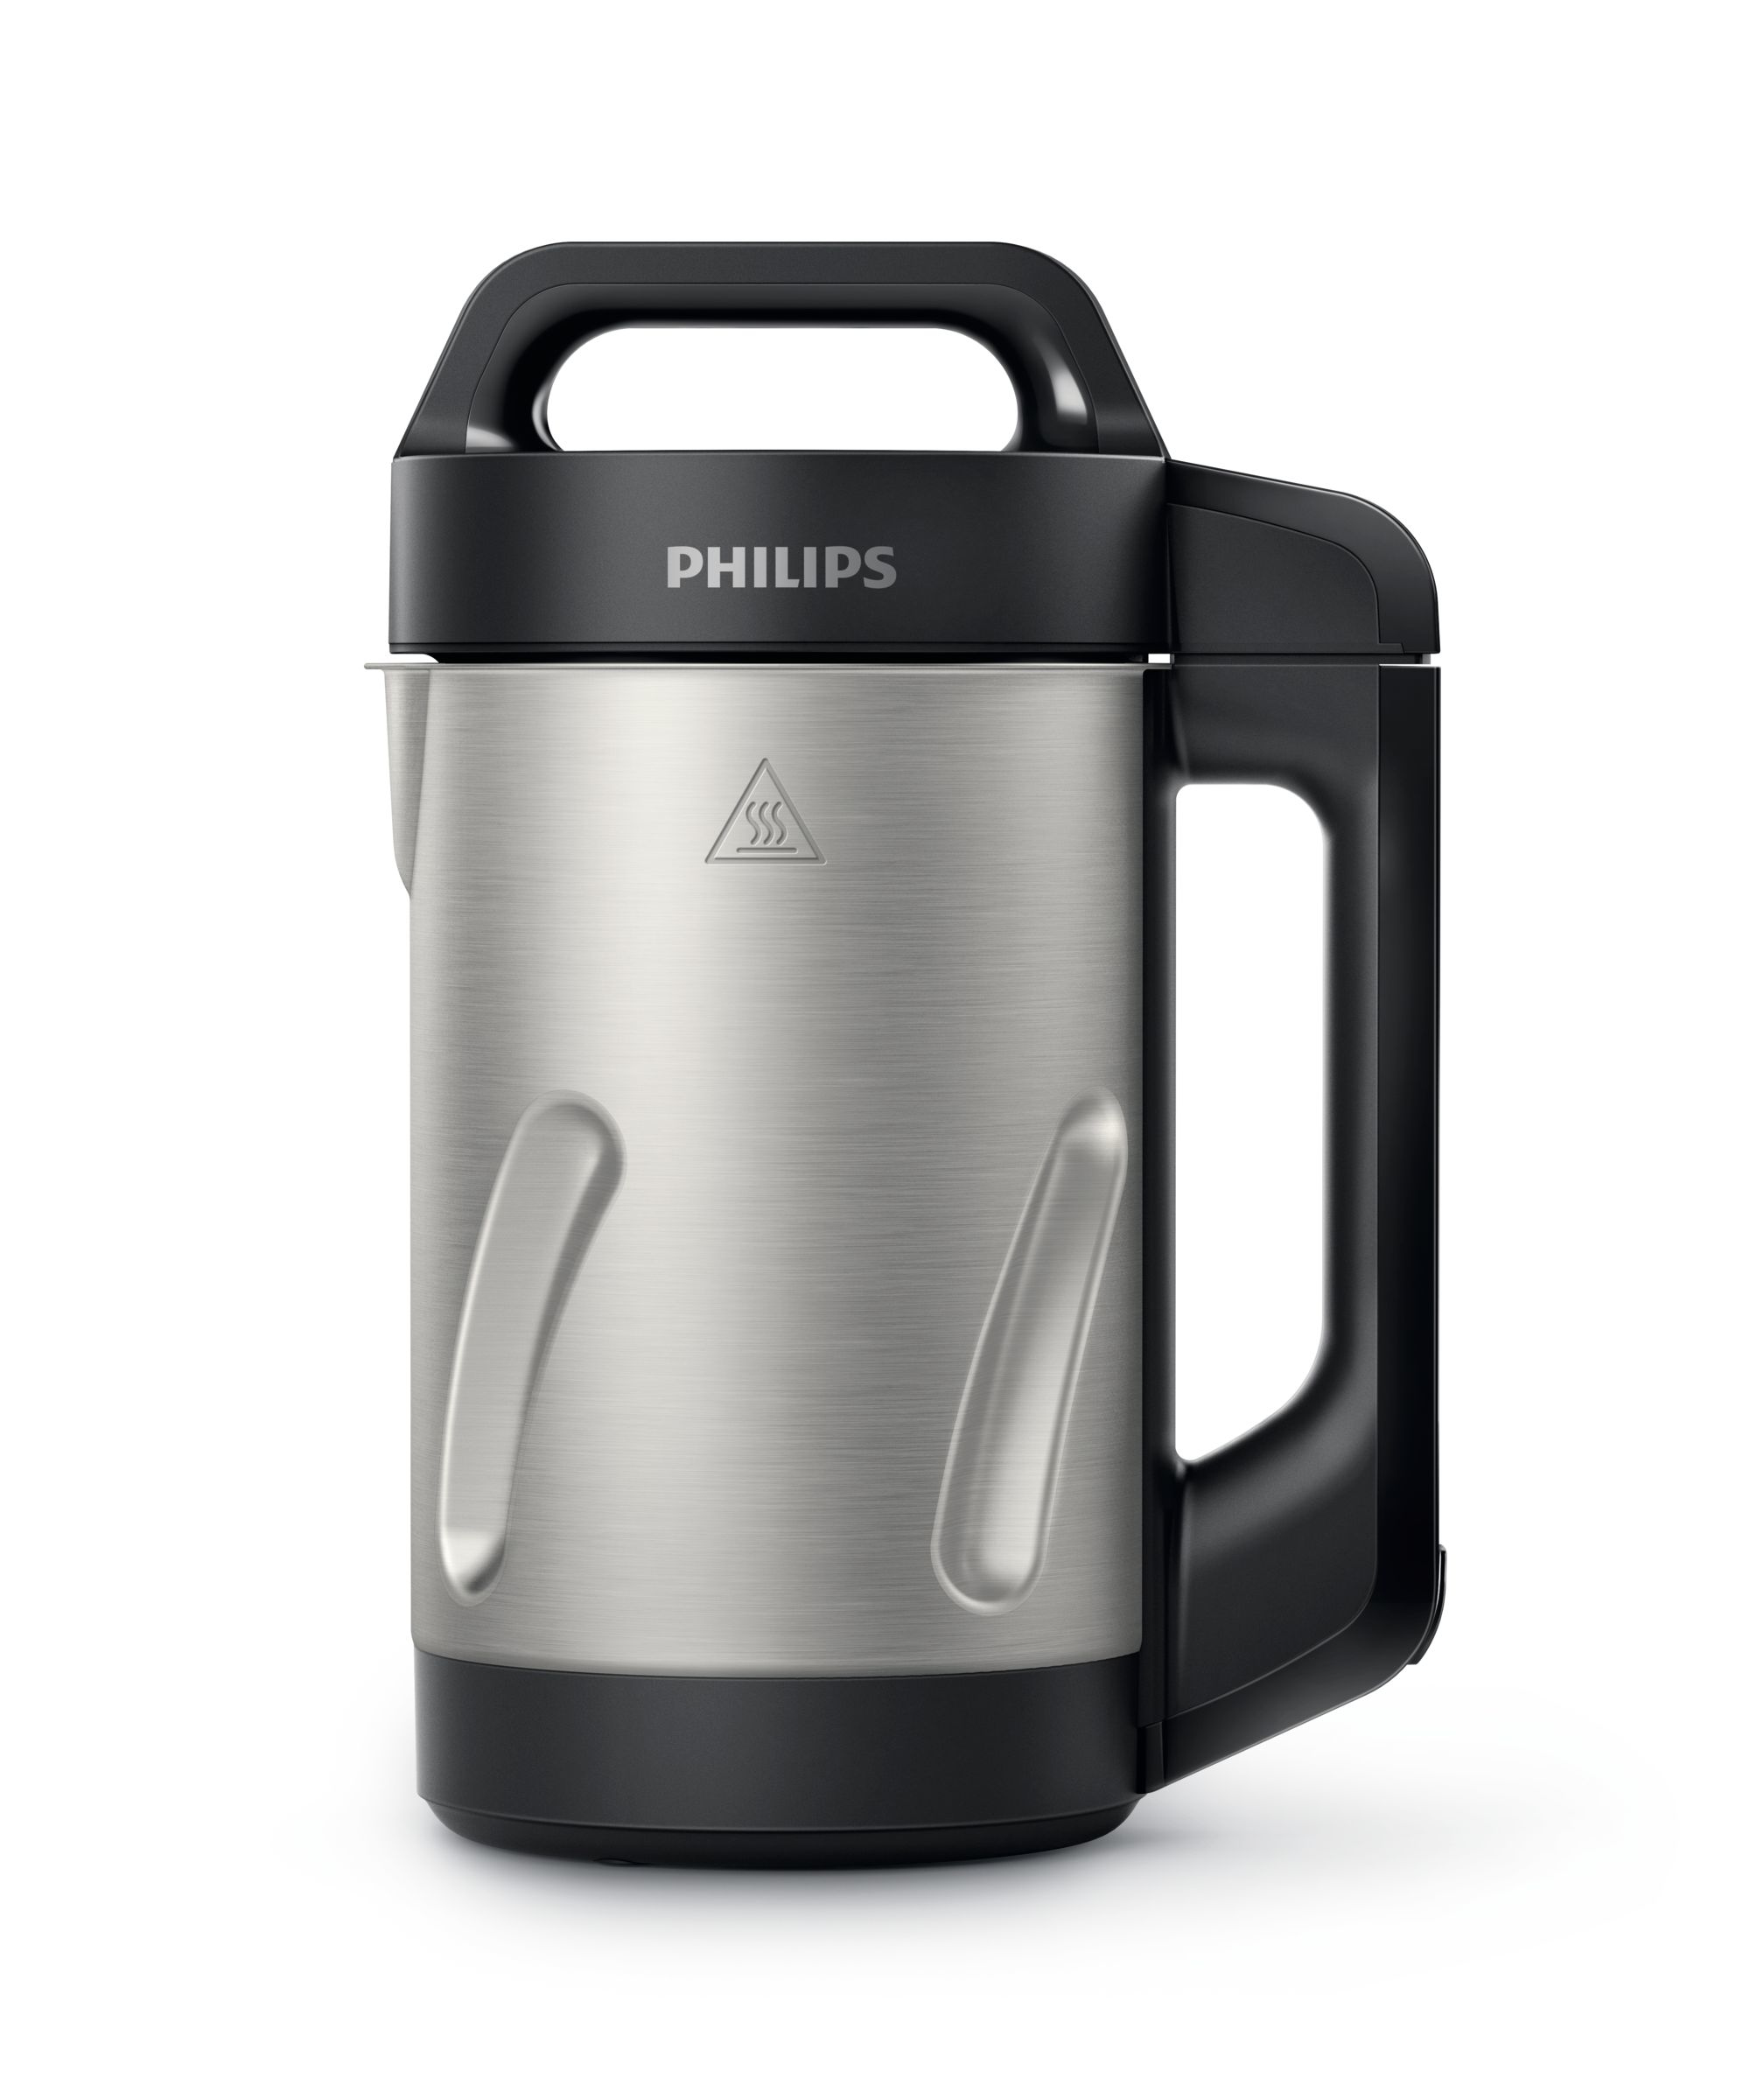 Philips blender - soepmaker HR2203/80